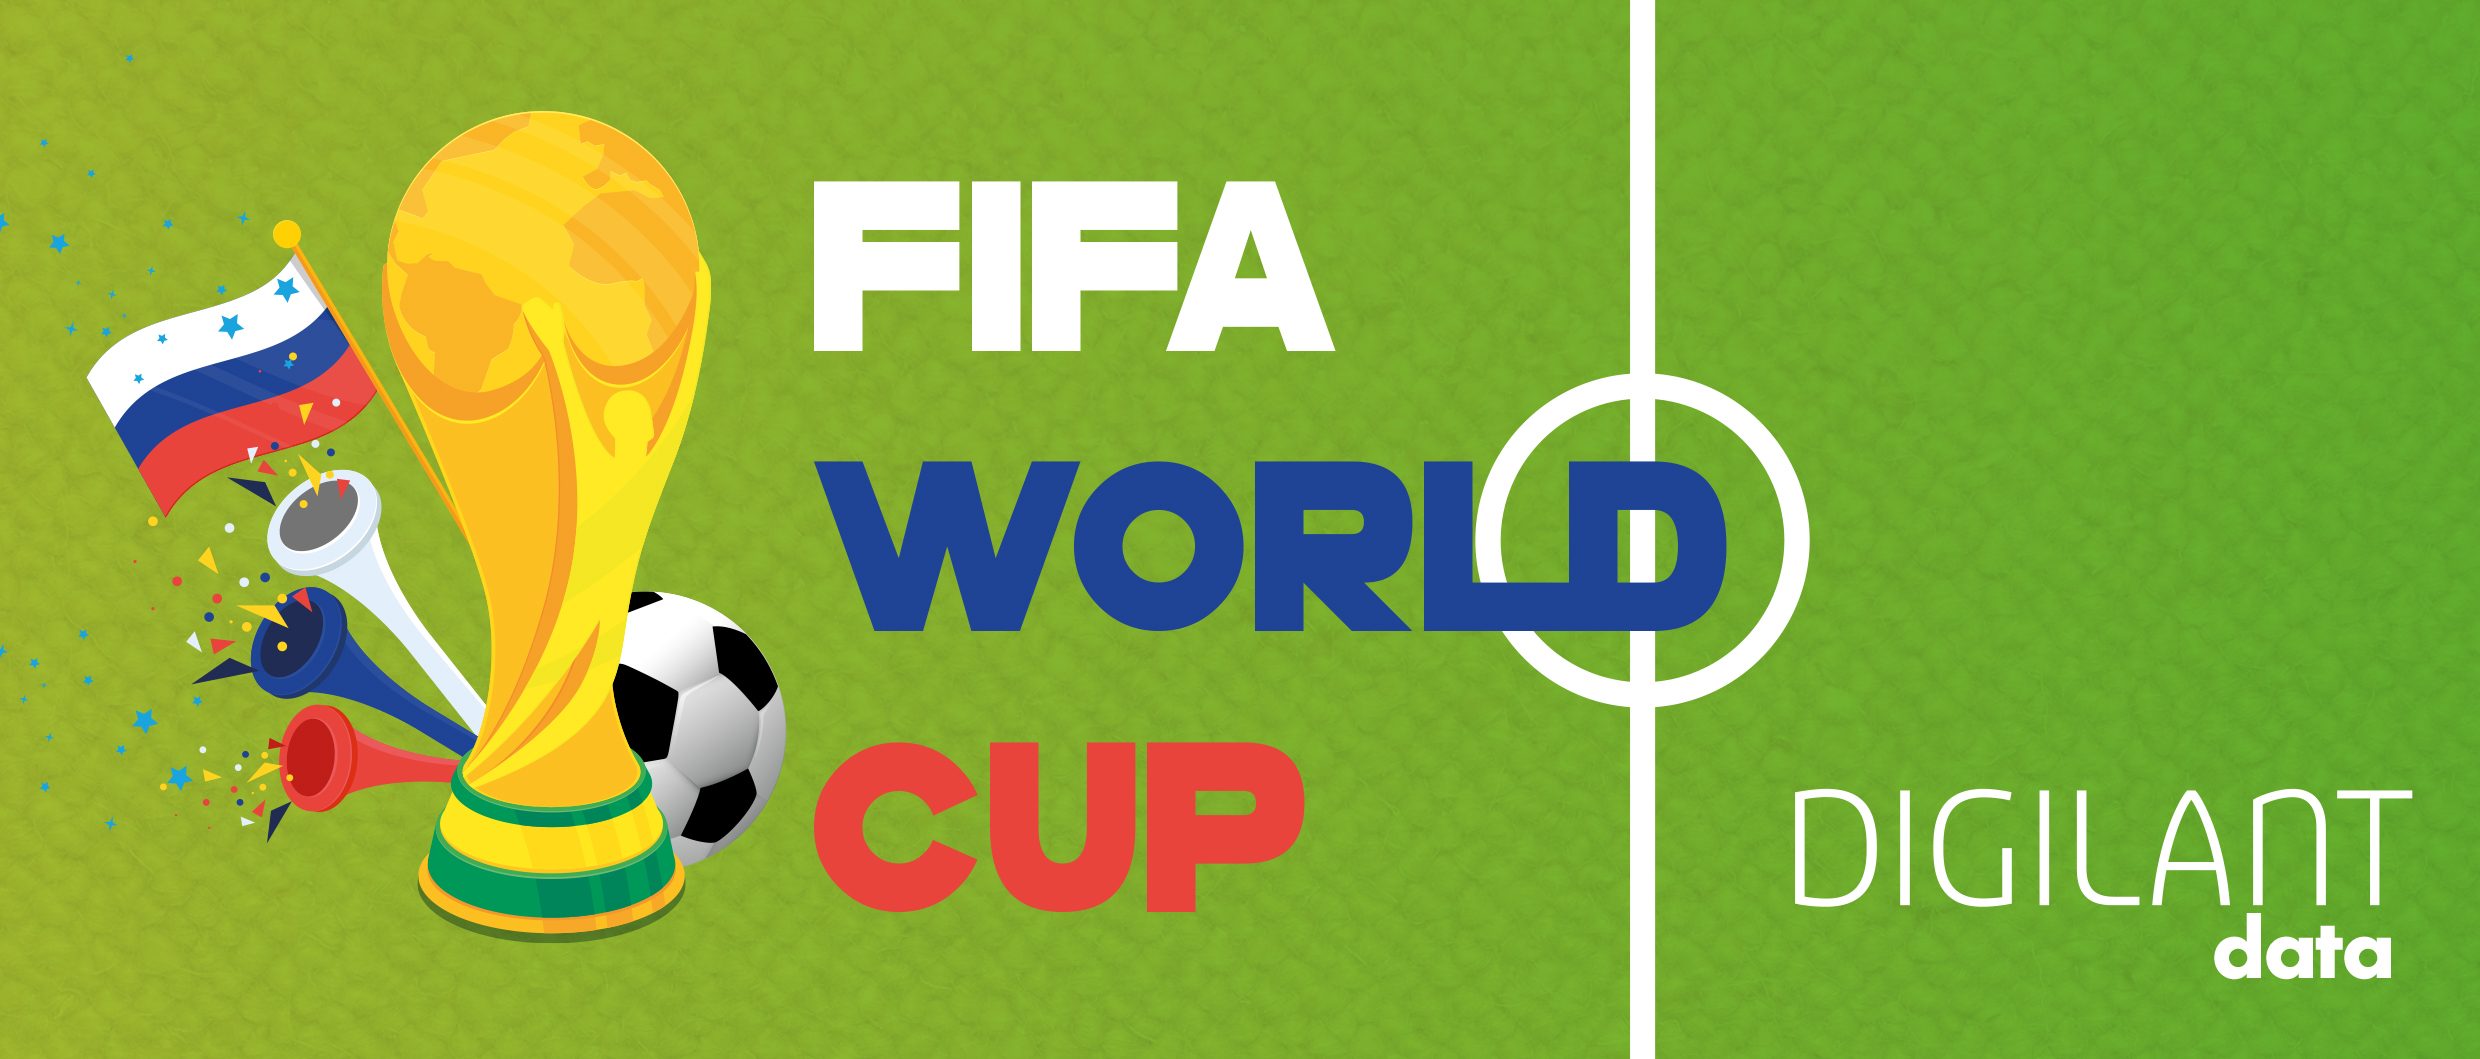 social media insights world cup 2018